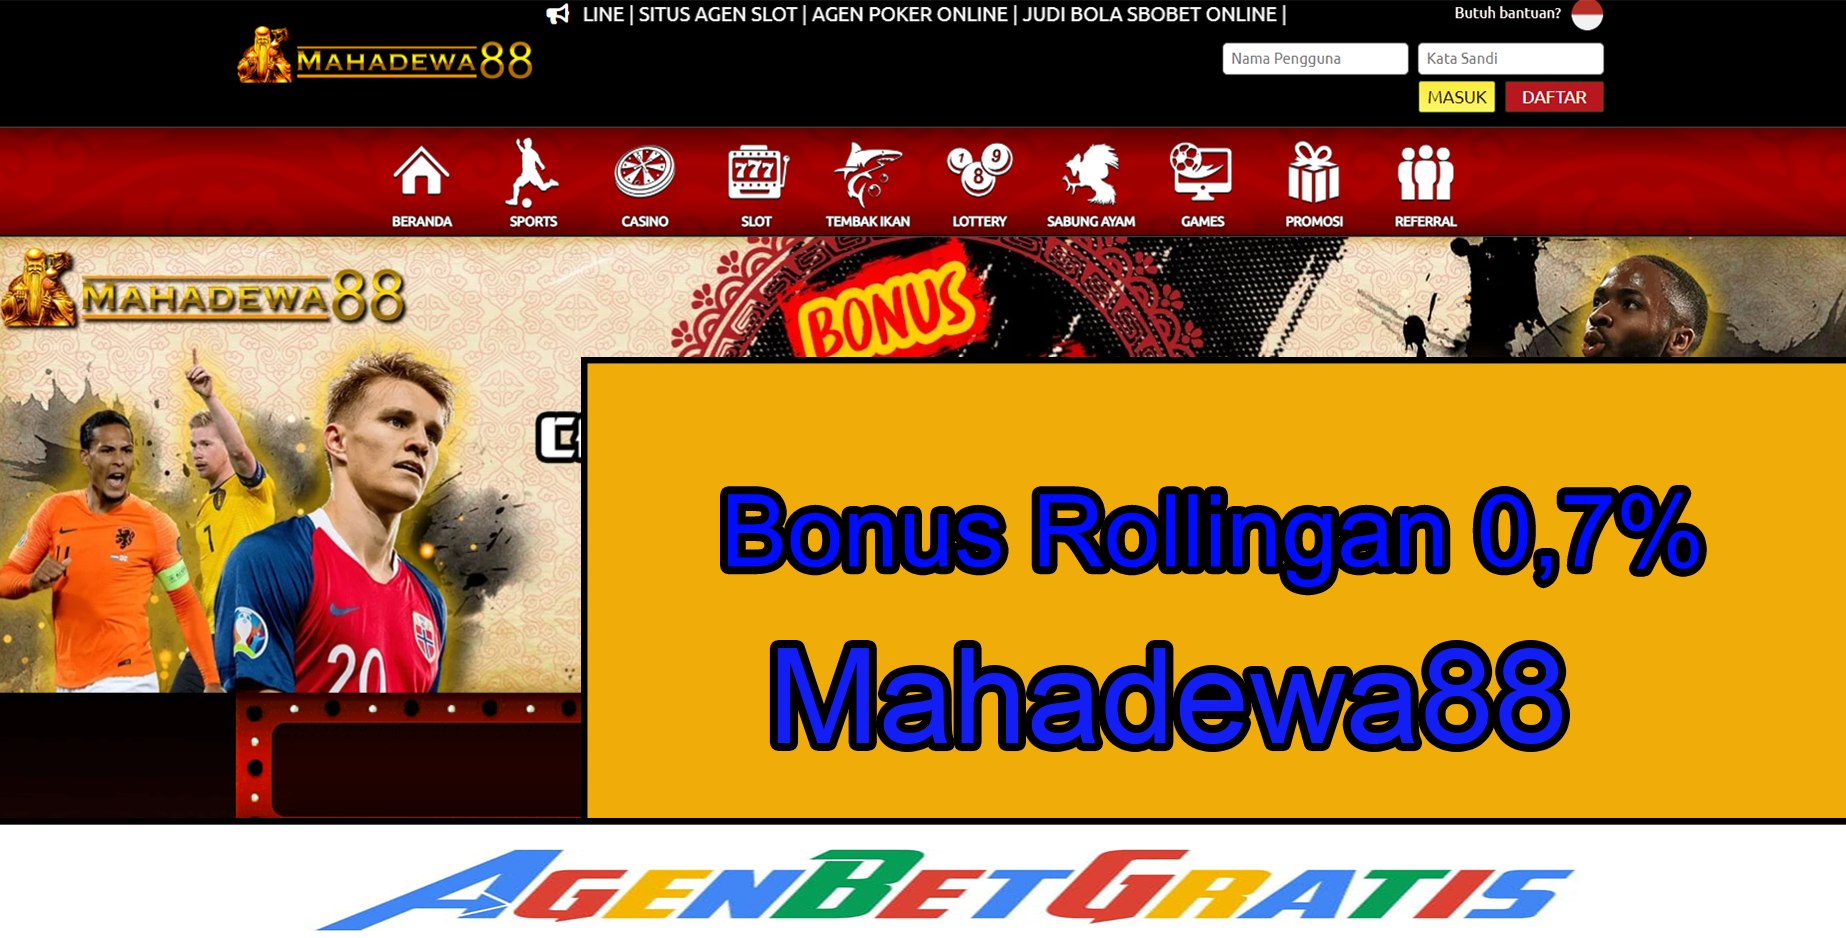 MAHADEWA88 - Bonus Rollingan 0,7%